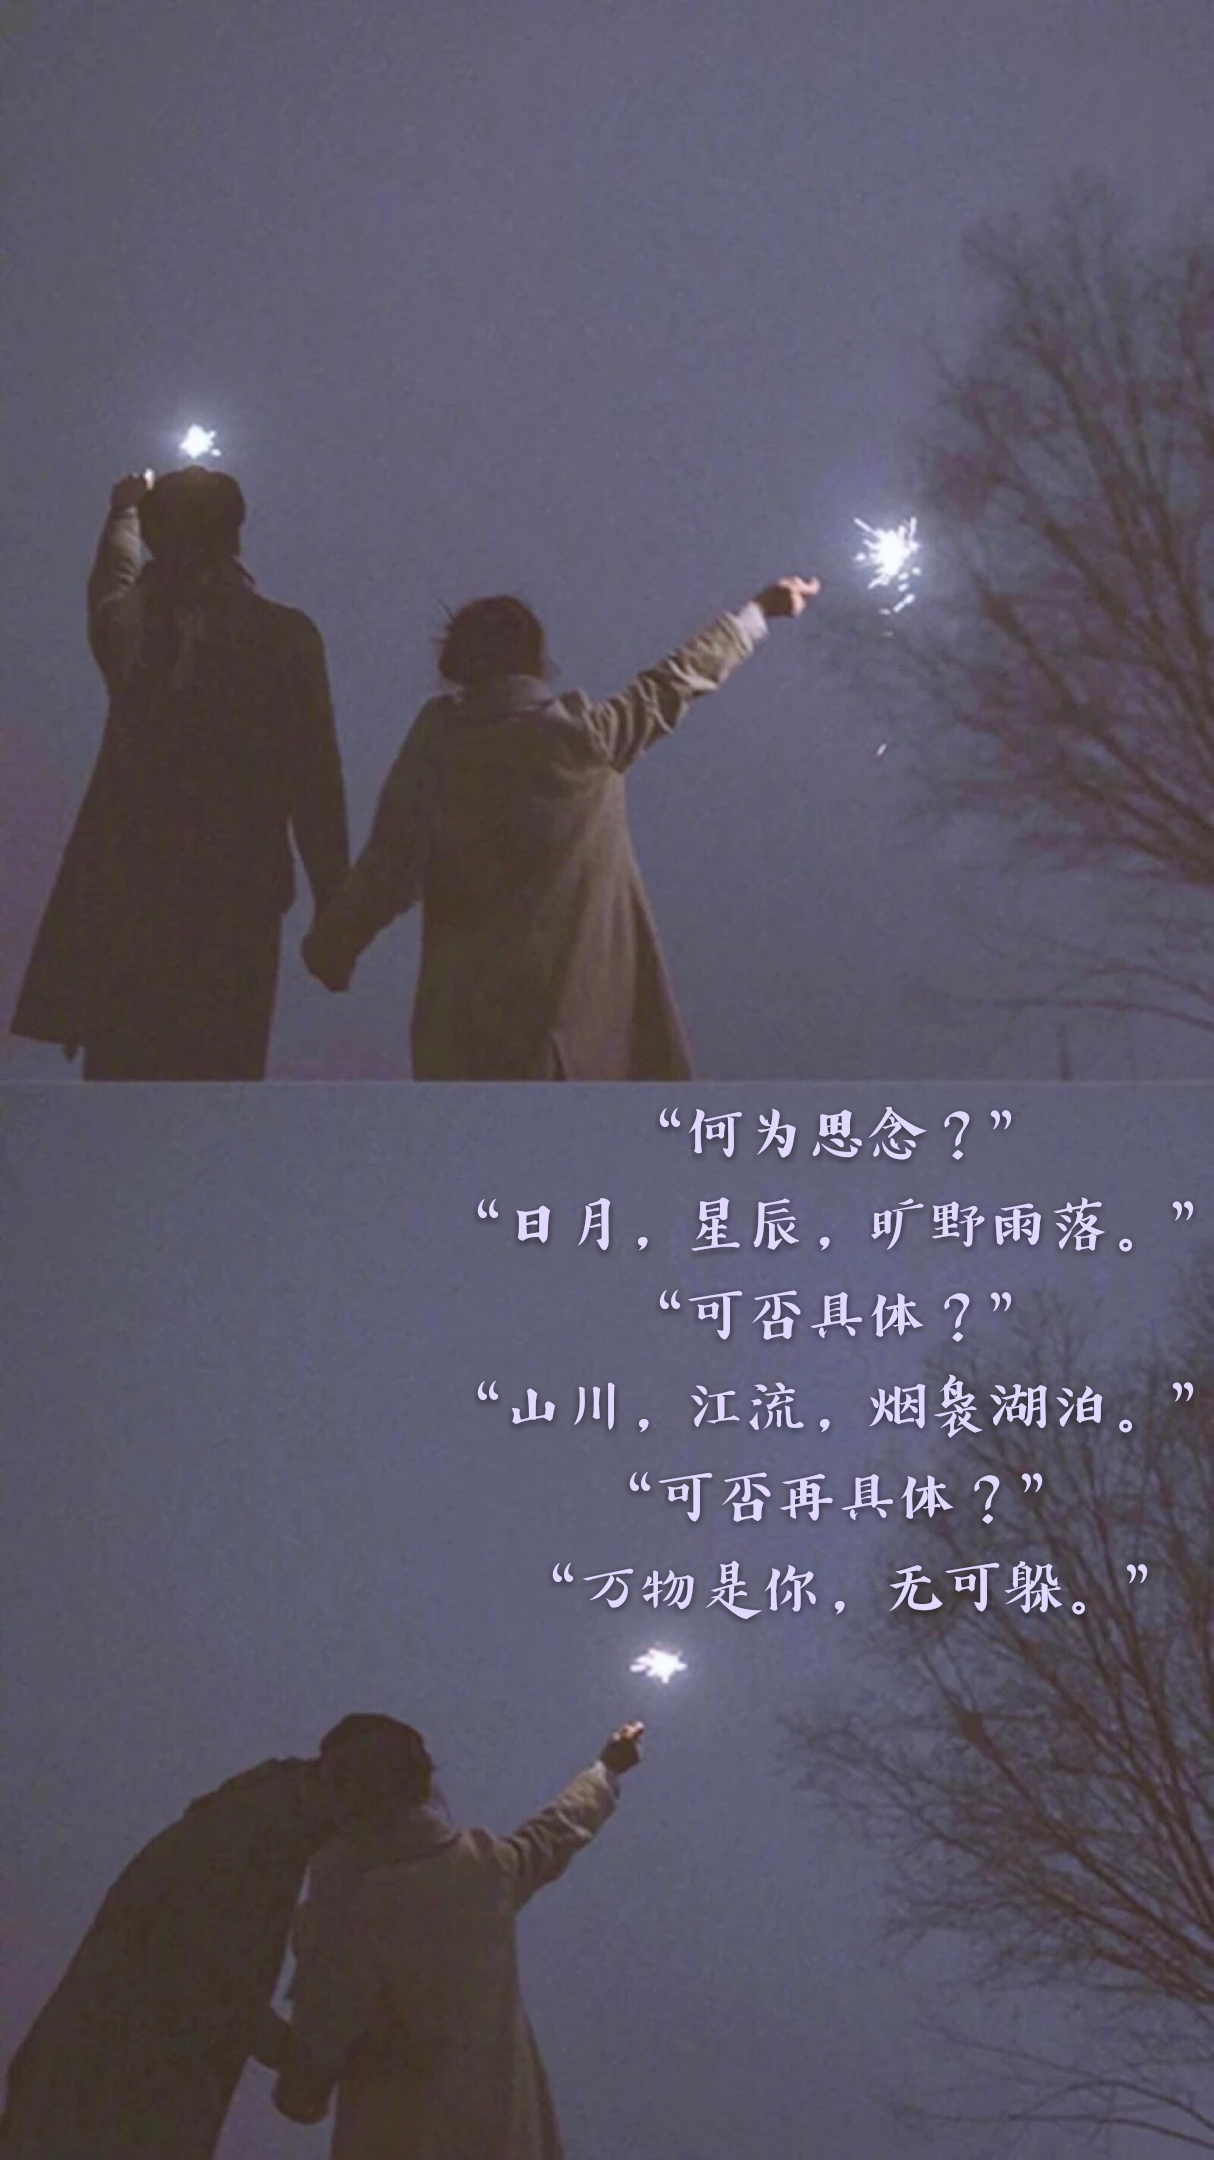 "何为思念?""日月,星辰,旷野雨落.""可否具体?""山川,江流,烟袅湖泊.